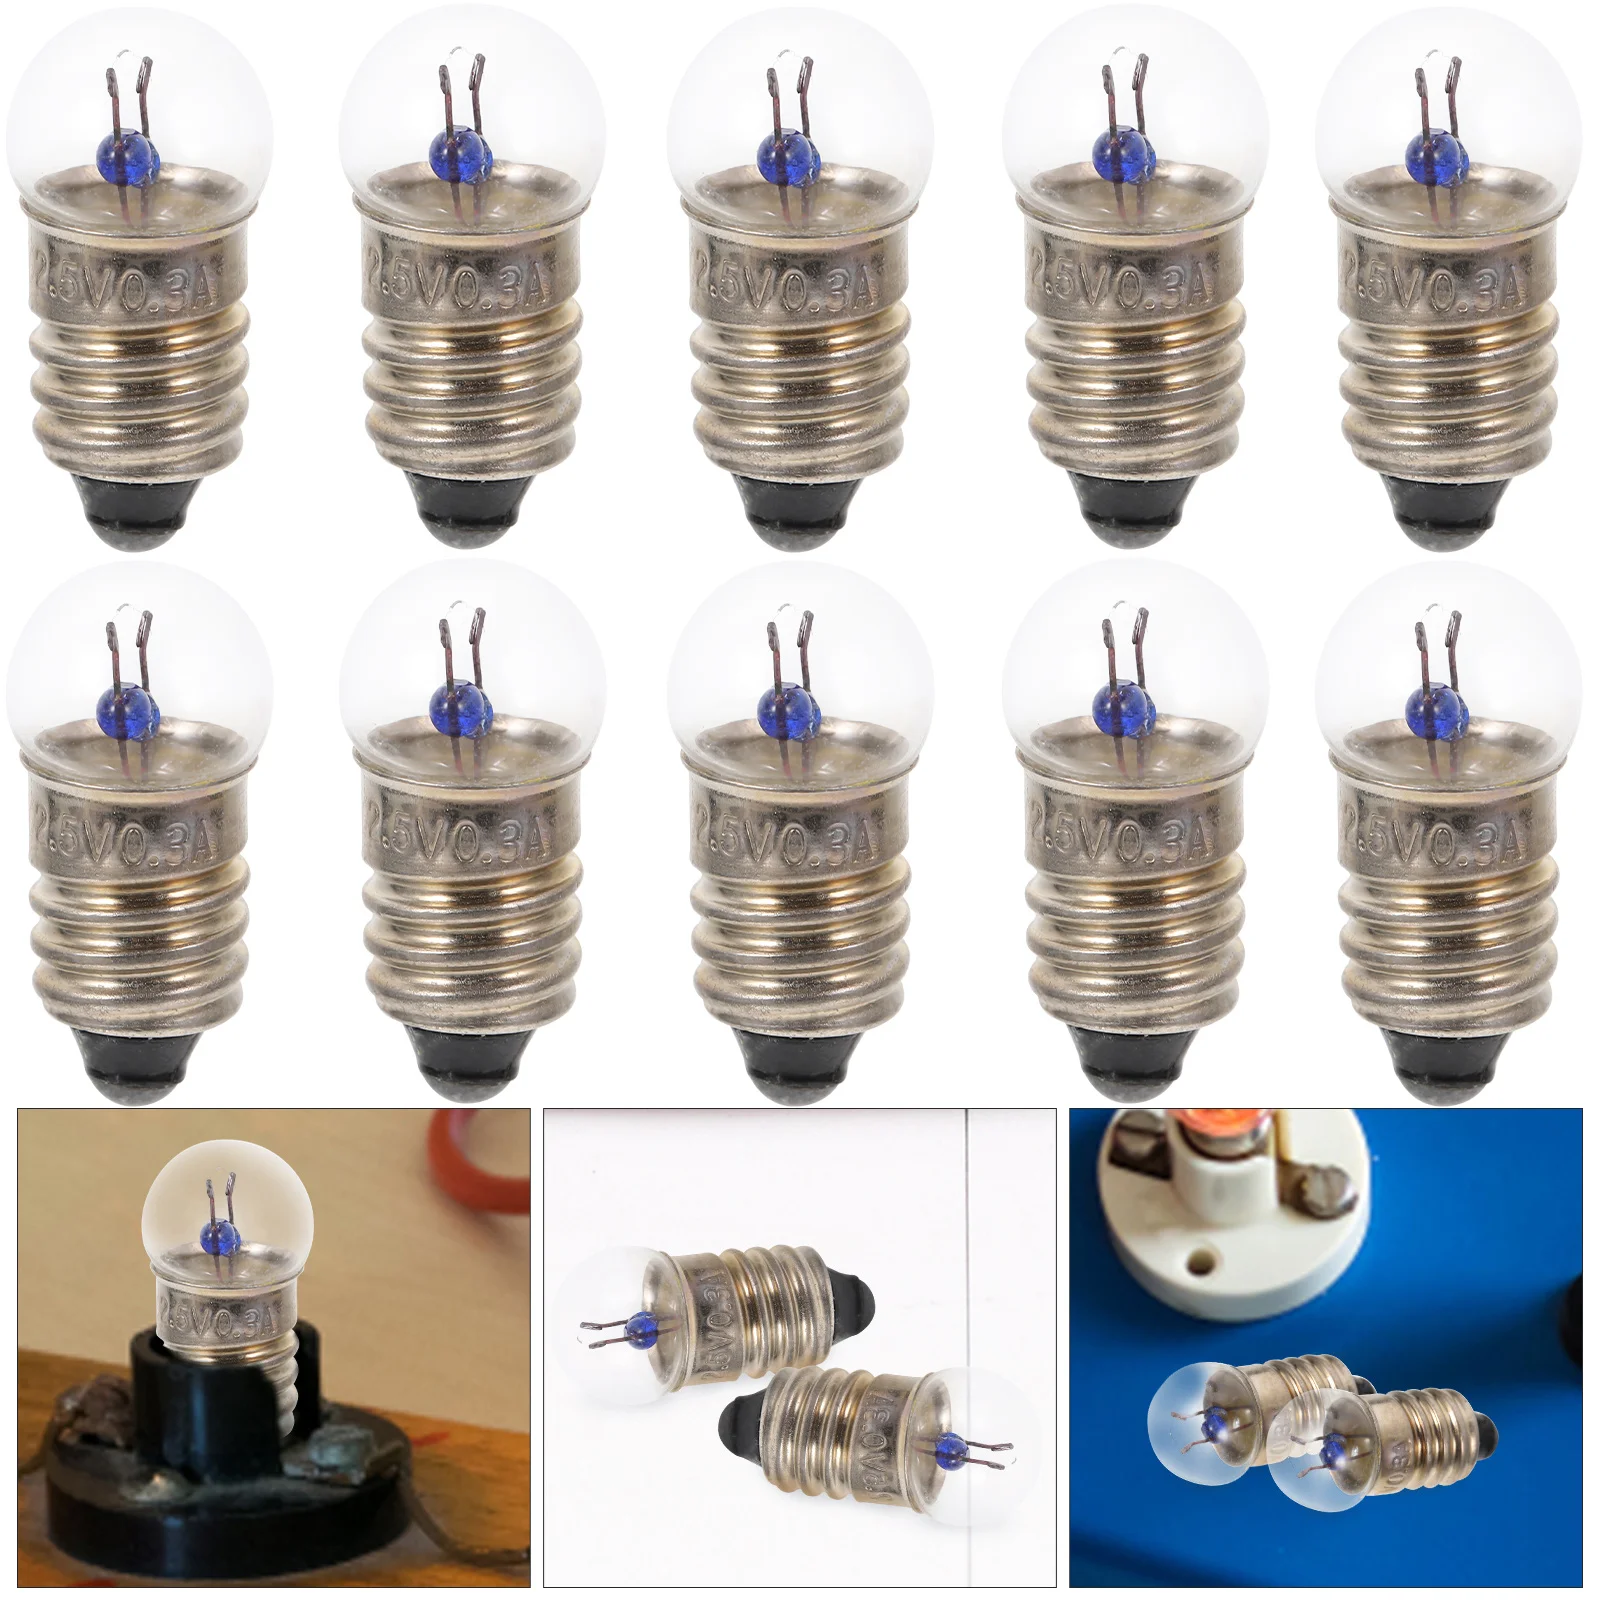 

10pcs 120v 60hz Light Bulb E10 Led Lamps Tiny Lights Miniature Light Bulbs Screw Base Miniature Bulbs 2. 5v Light Bulb